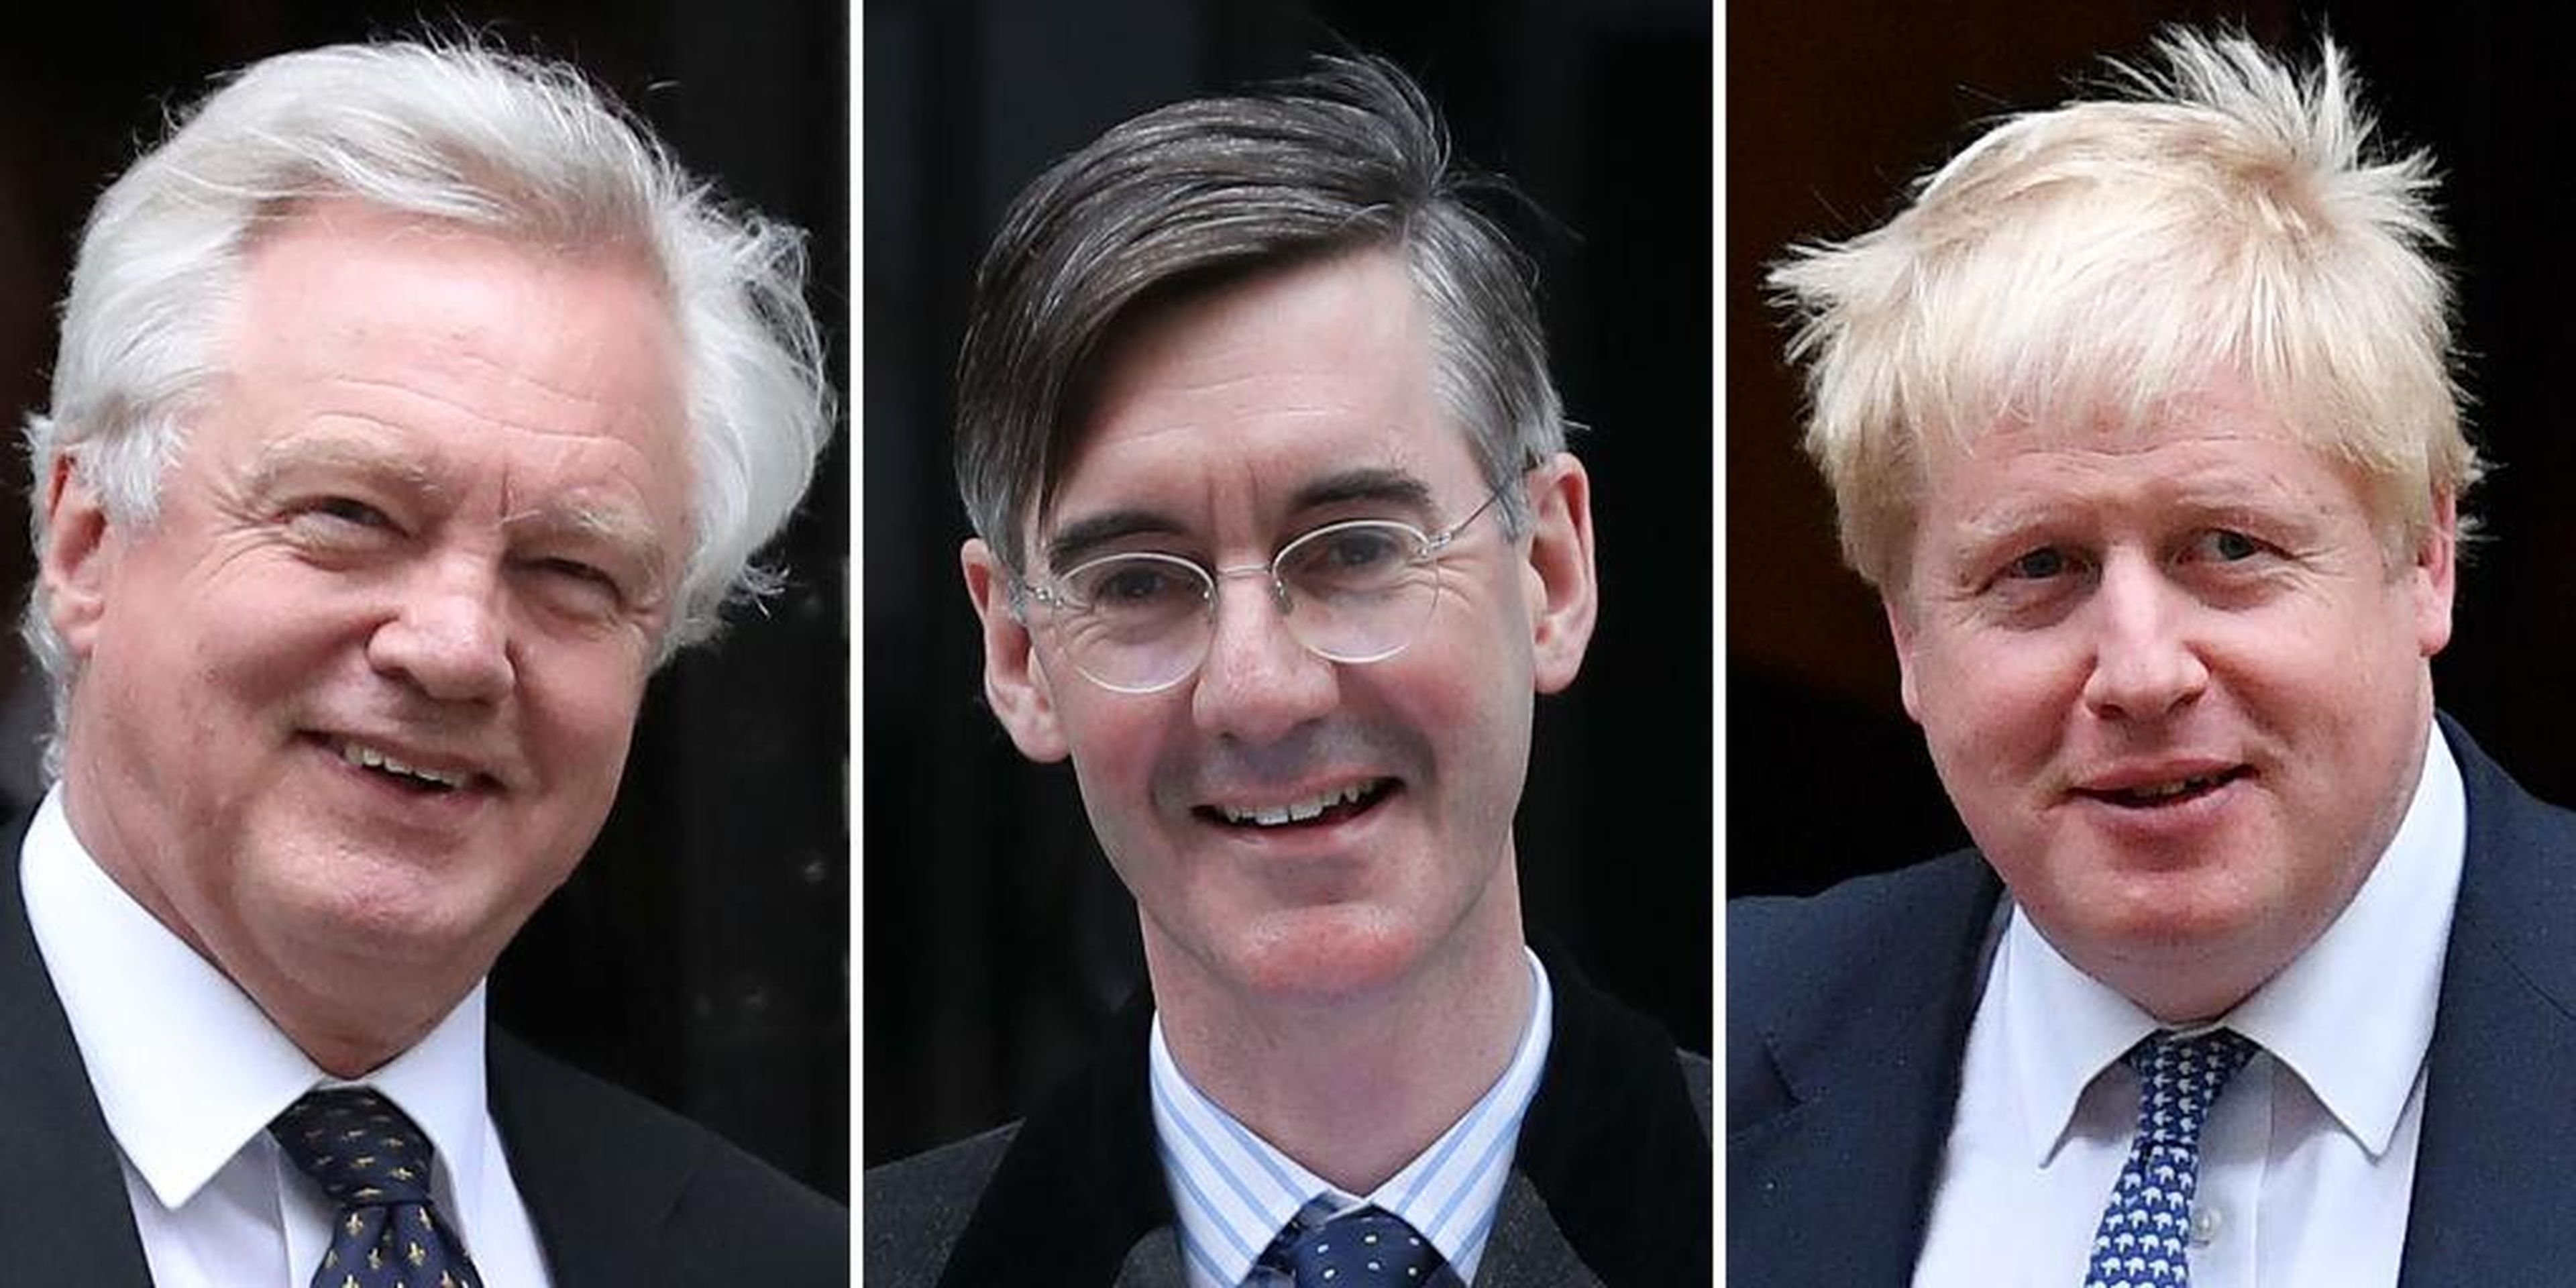 Los diputados conservadores favorables el Brexit David Davis, Jacob Rees-Mogg y Boris Johnson